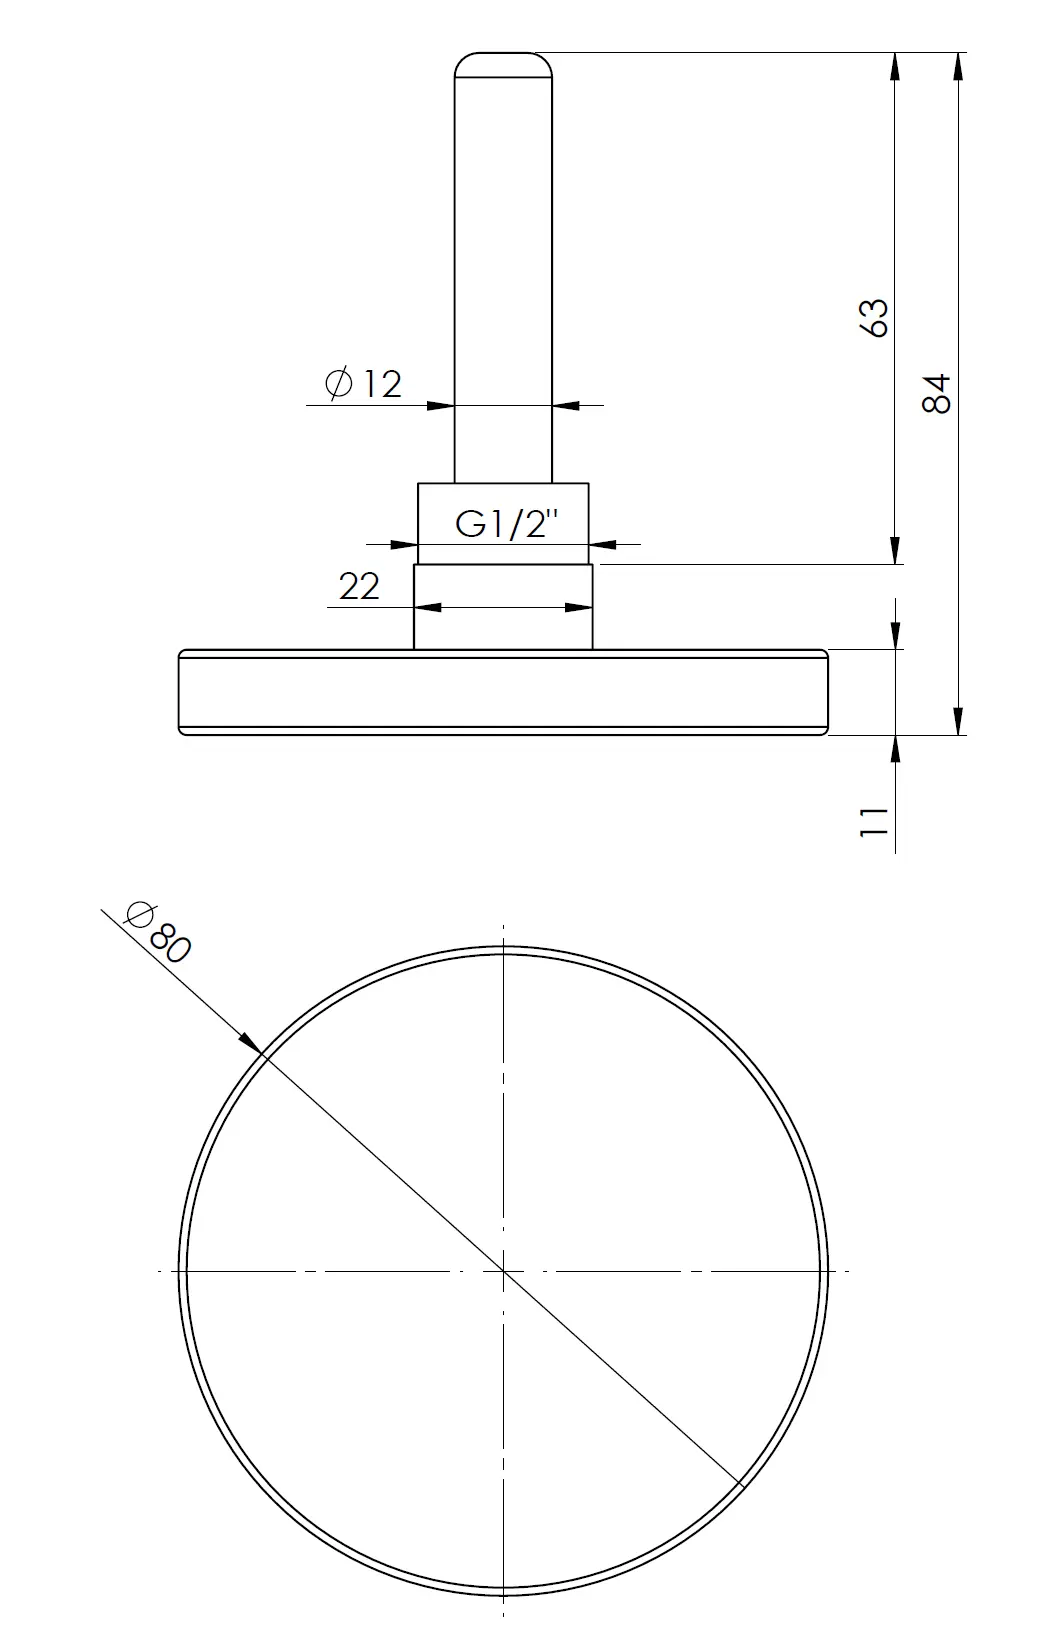 Termometr bimetaliczny BiTh 80, fi80 mm, 0÷60°C, L 63 mm, G1/2", ax, kl. 2 - budowa